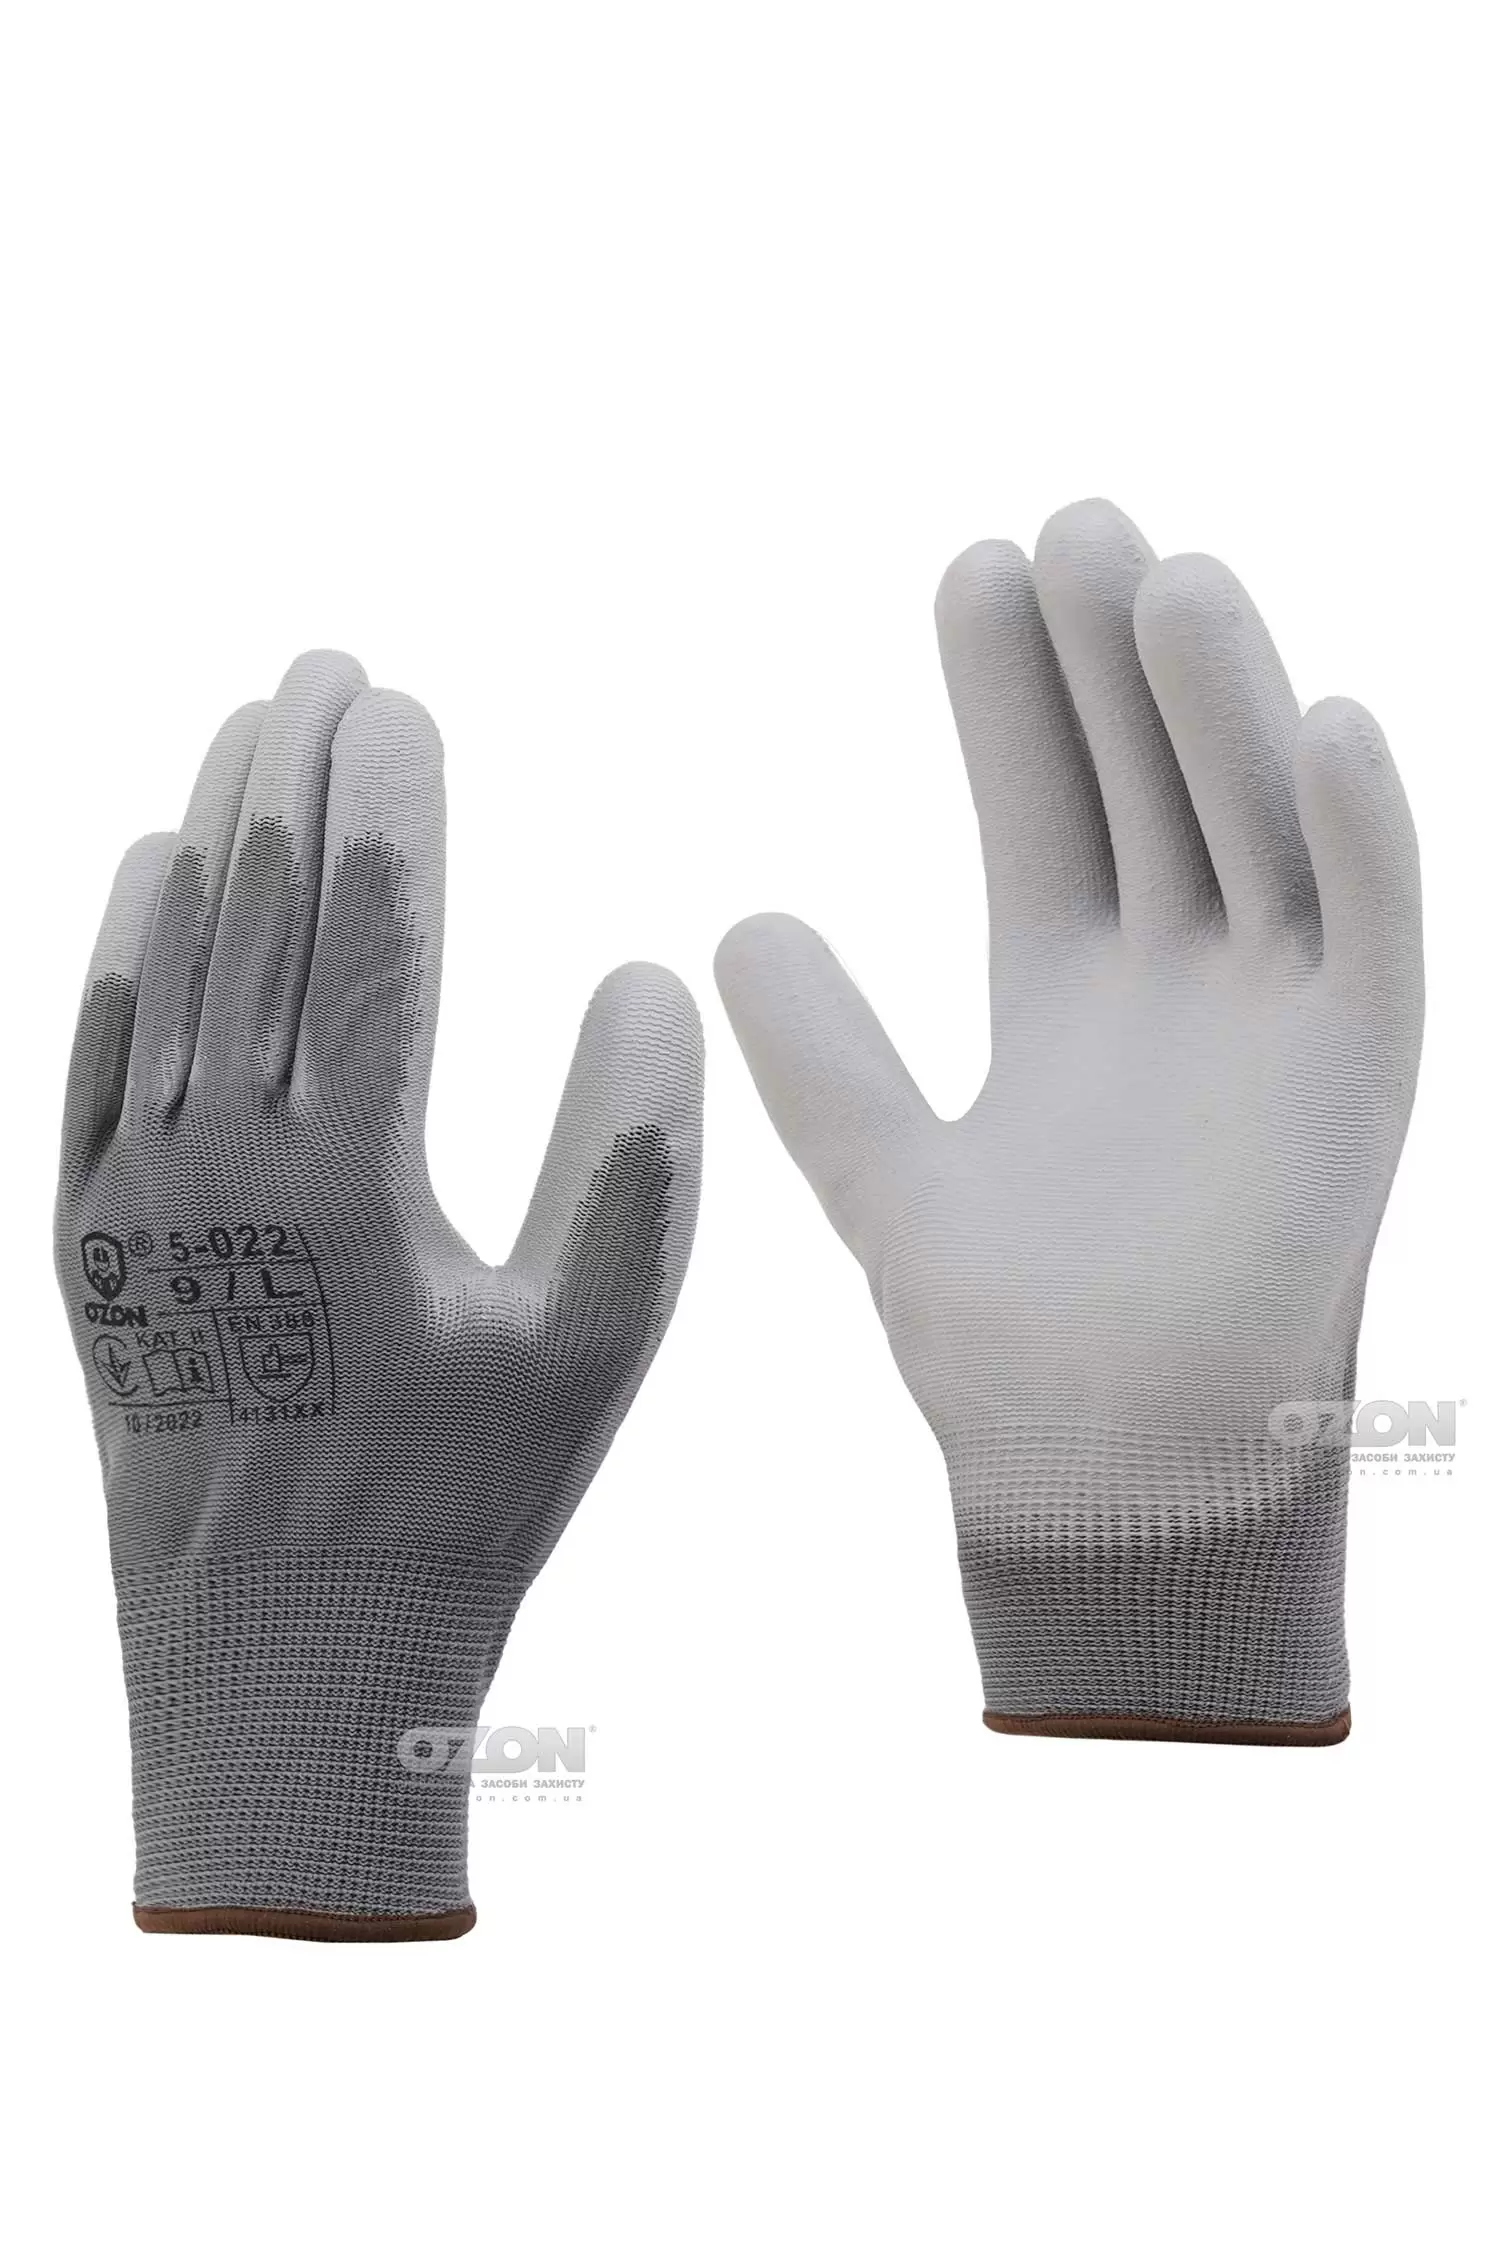 12 пар перчатки трикотажные с полиуретановым покрытием OZON, 5-022 - Фото 1